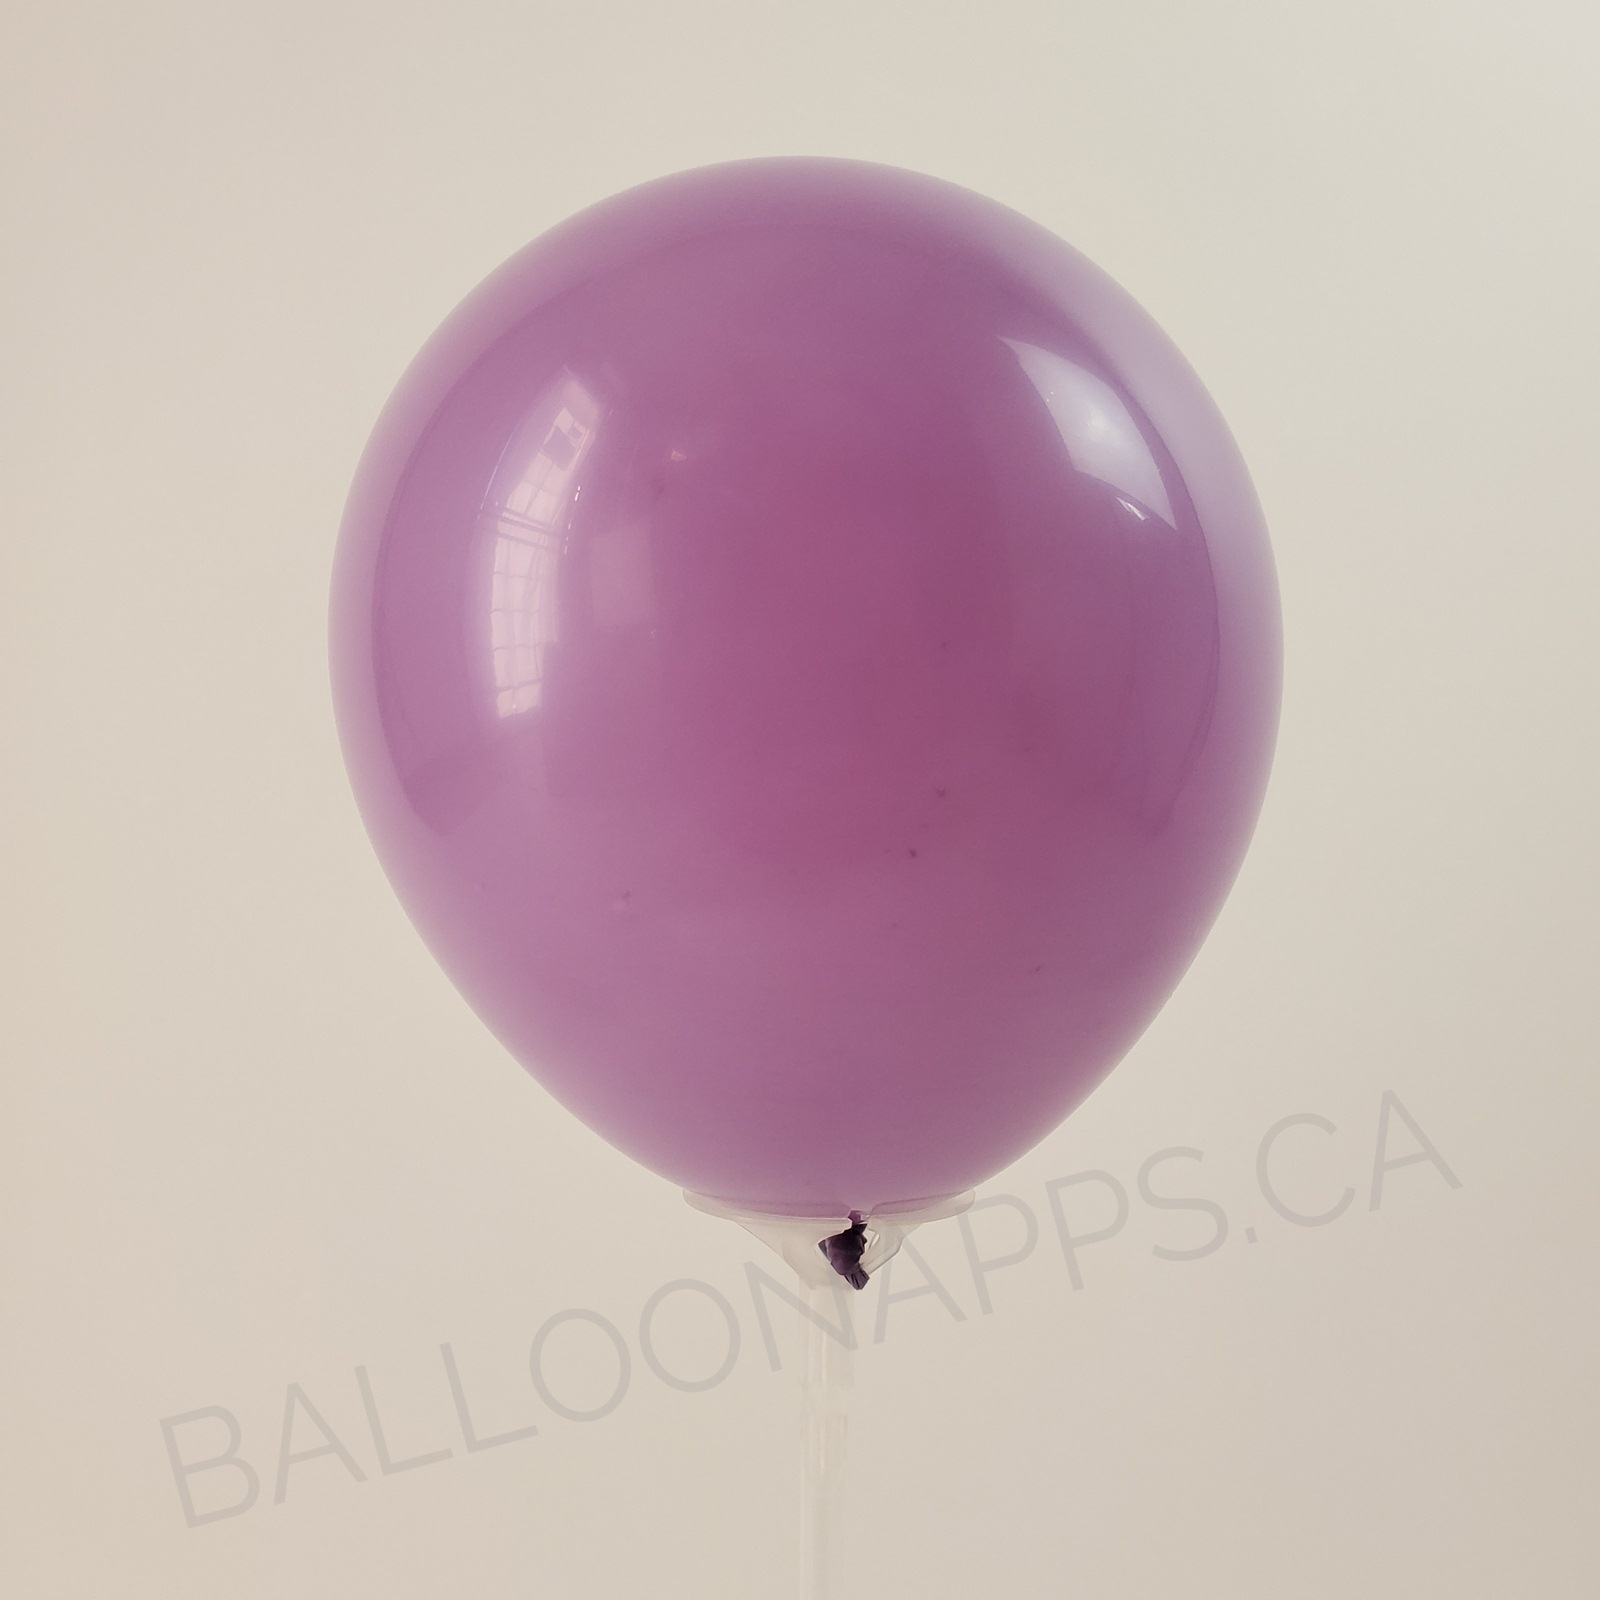 balloon texture Q (2) 36